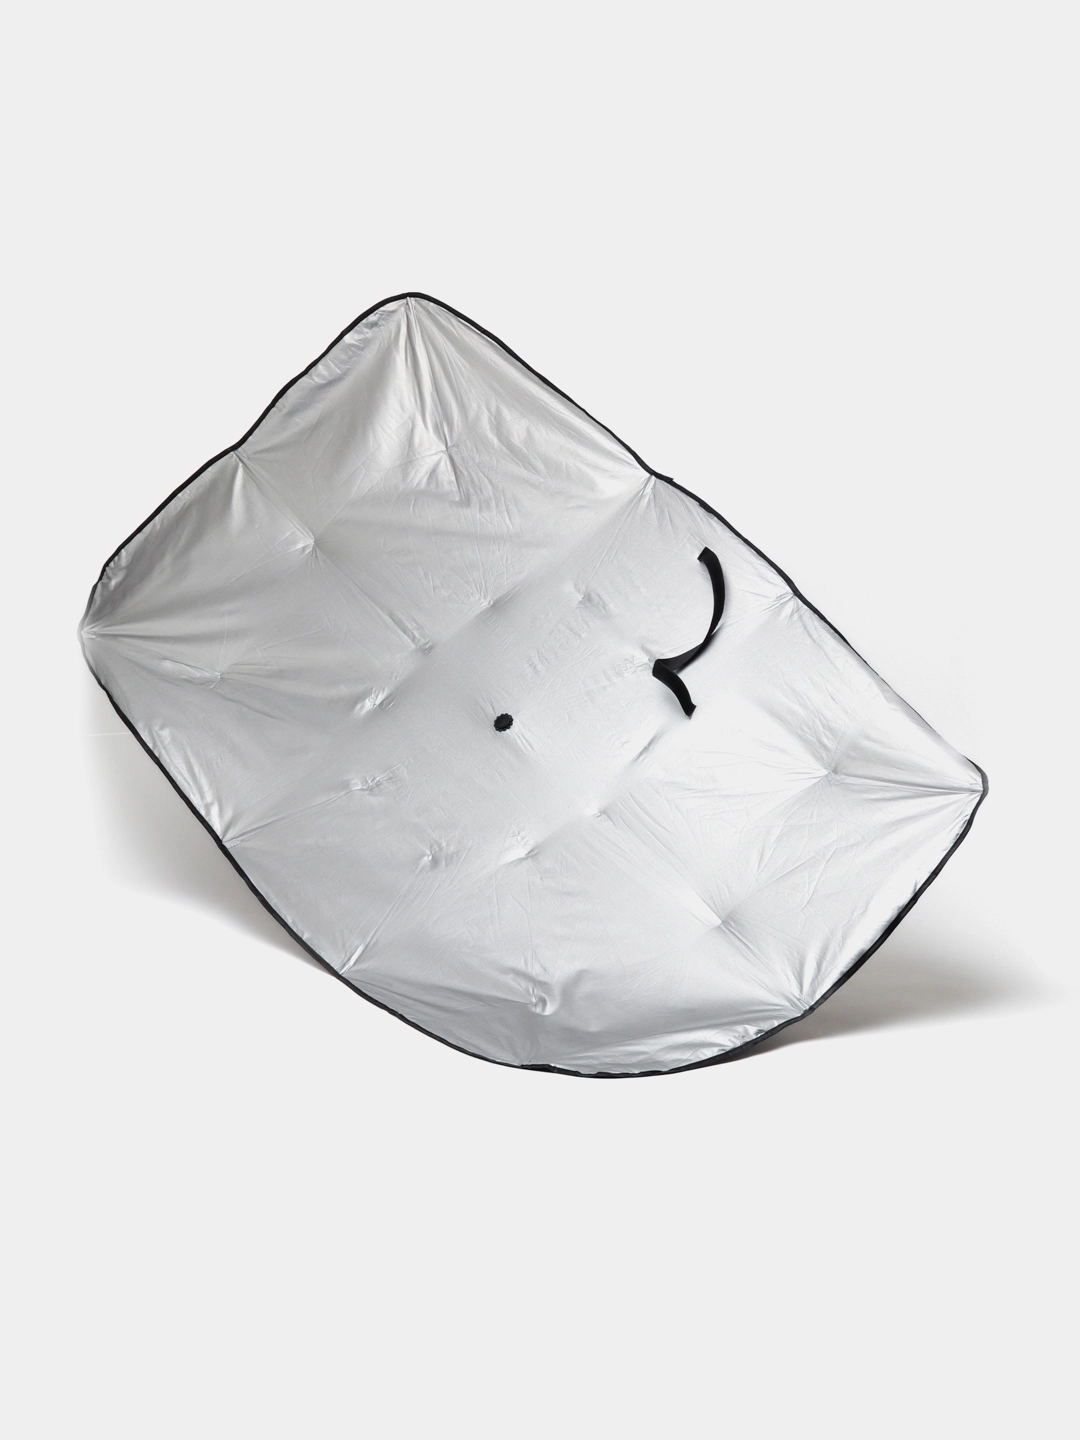 Солнцезащитный зонт шторка для лобового стекла автомобиля (140X65см) купить